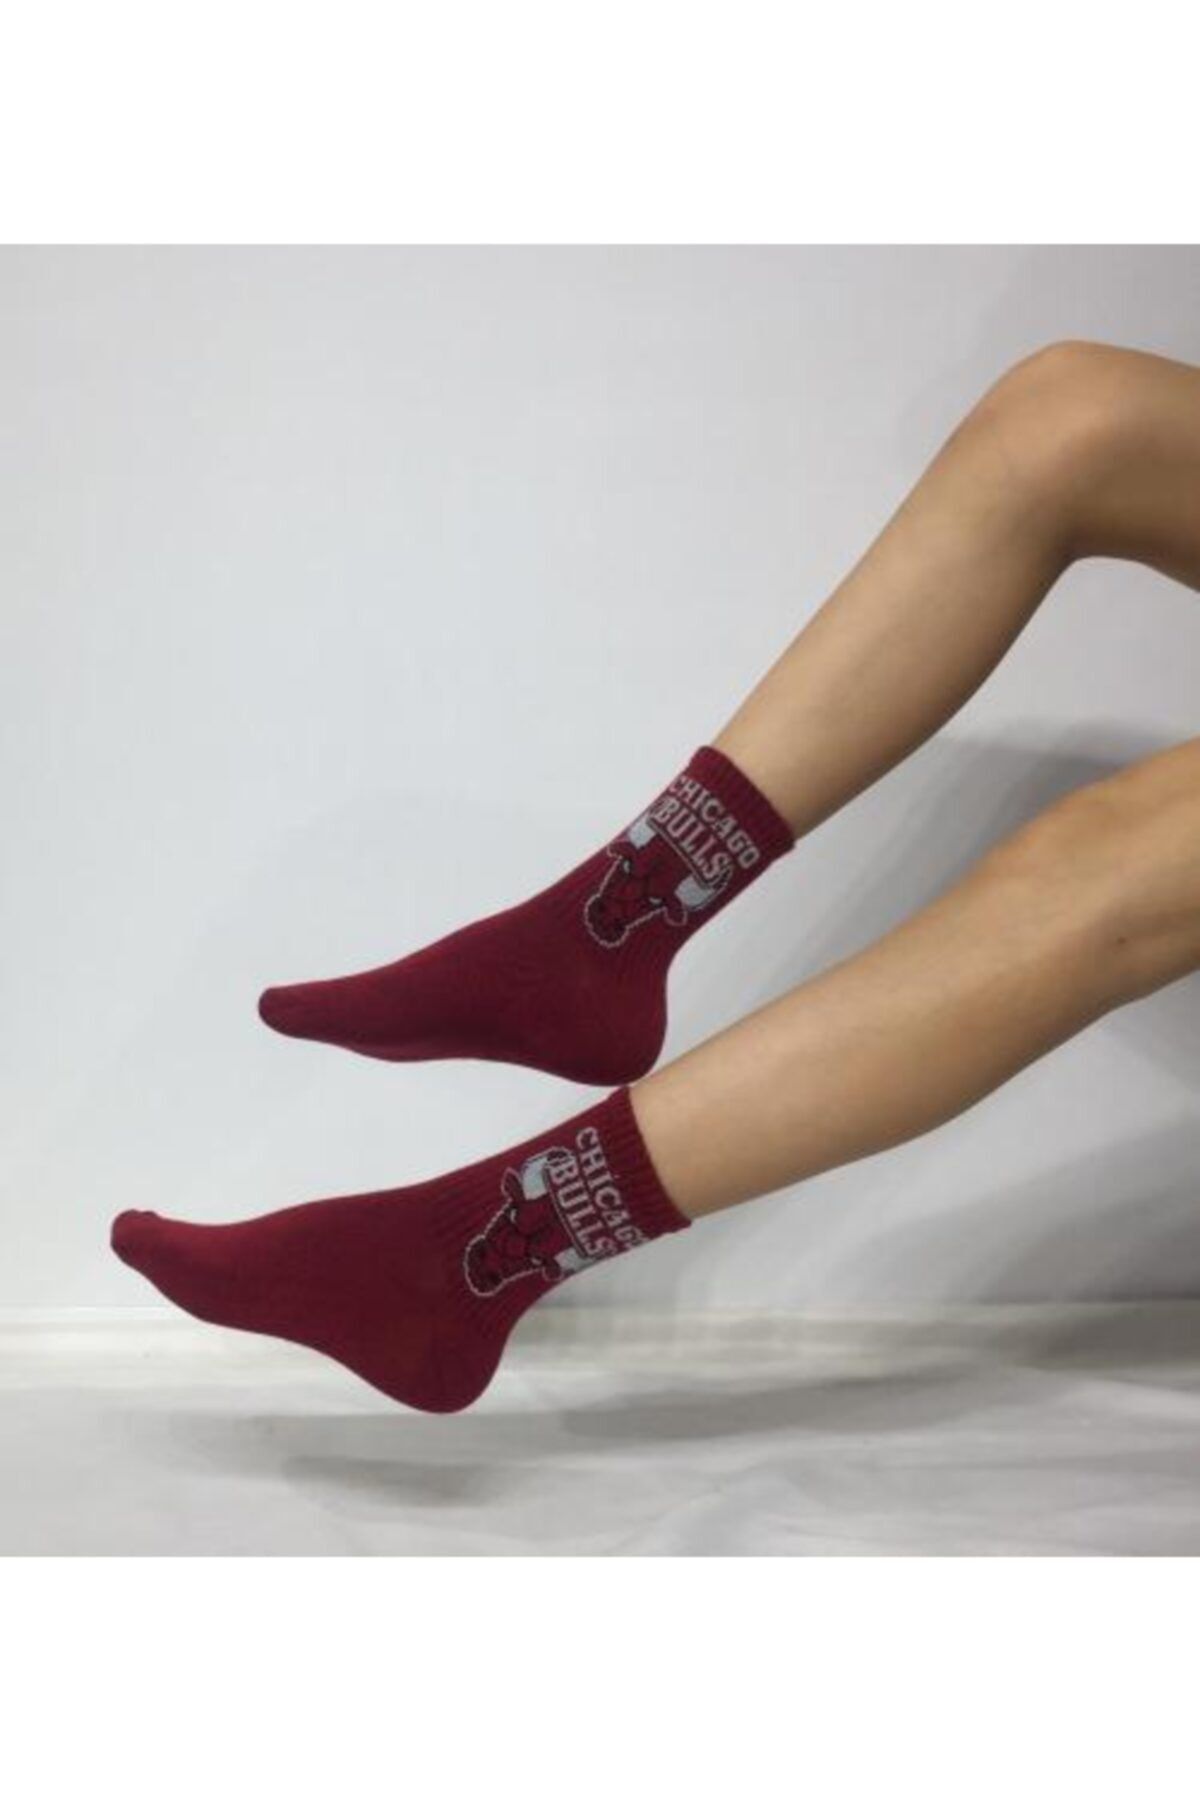 Adel Kokulu Unisex Chicago Bulls Desenli Kolej Çorabı